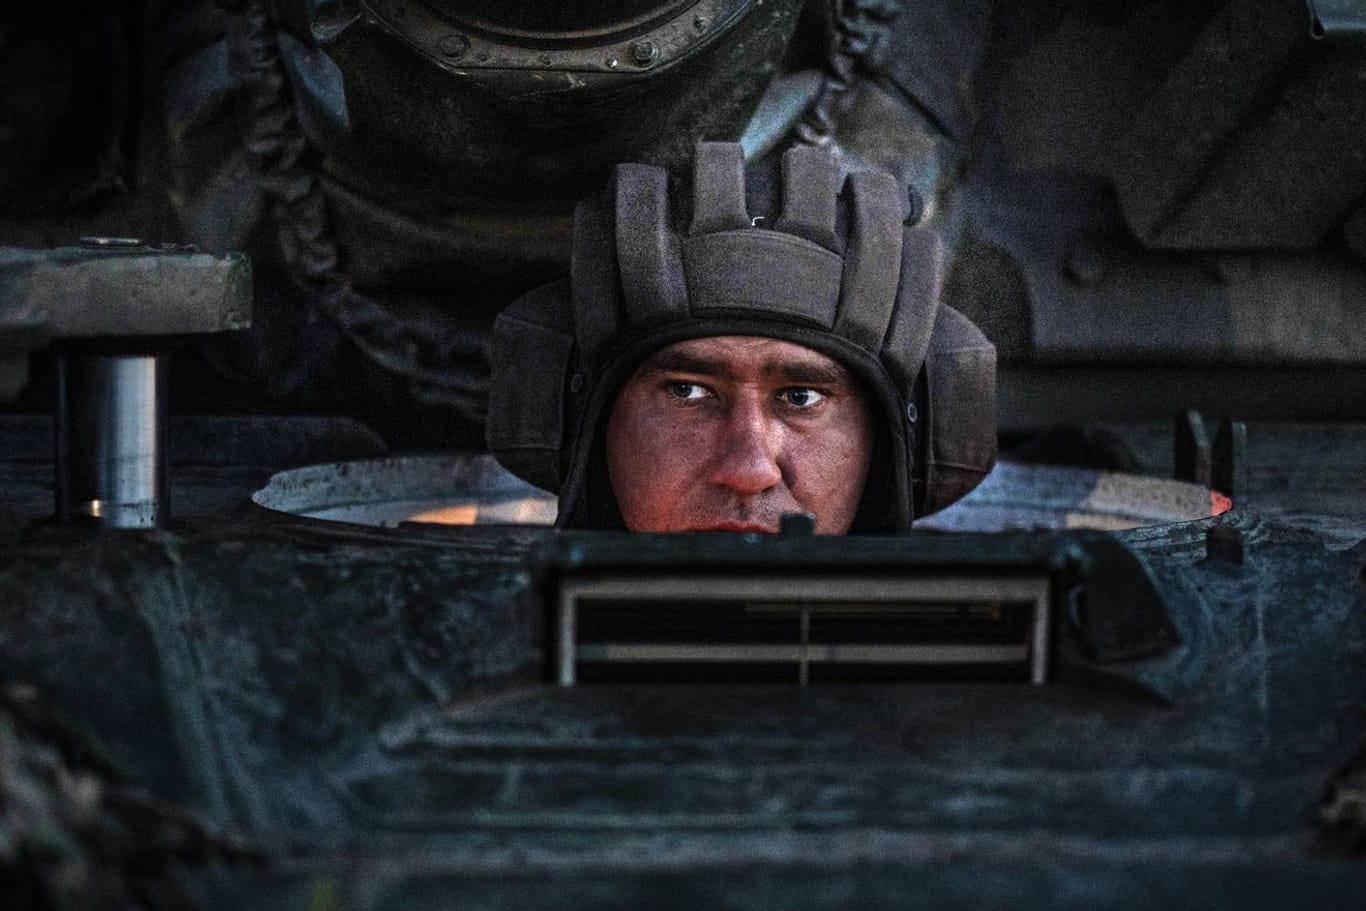 Ukraine, Kostjantyniwka: Ein ukrainischer Soldat 22. Brigade bei einer Nachtschießübung mit einem T-72 Panzer.